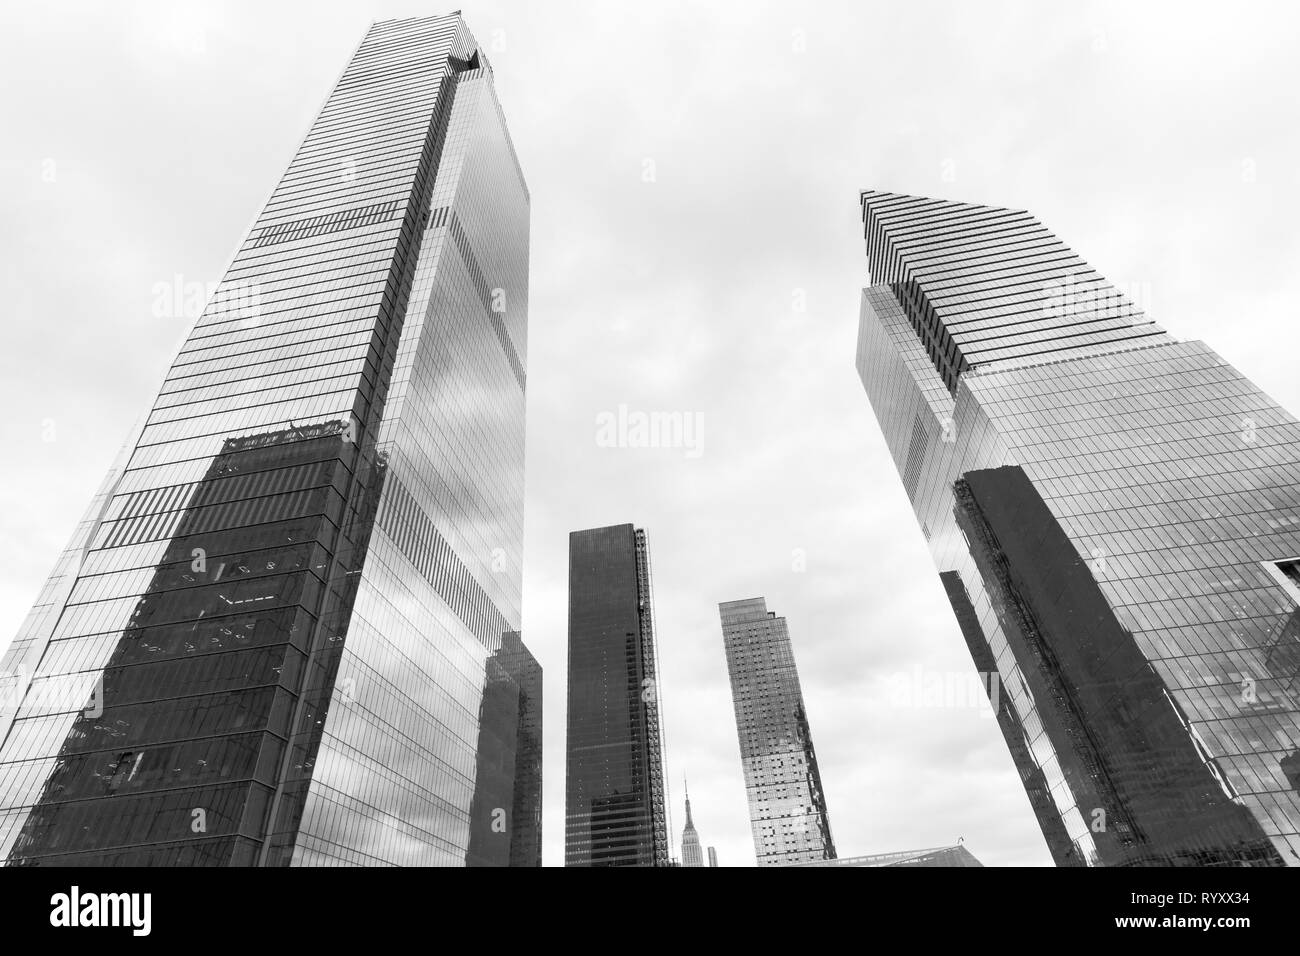 New York, NY - 15. März 2019: Hudson Yards ist lagest private Entwicklung in New York. Blick auf die Skyline von Hudson Yards von Manhattan während öffnung Tag Credit: Lev radin/Alamy leben Nachrichten Stockfoto